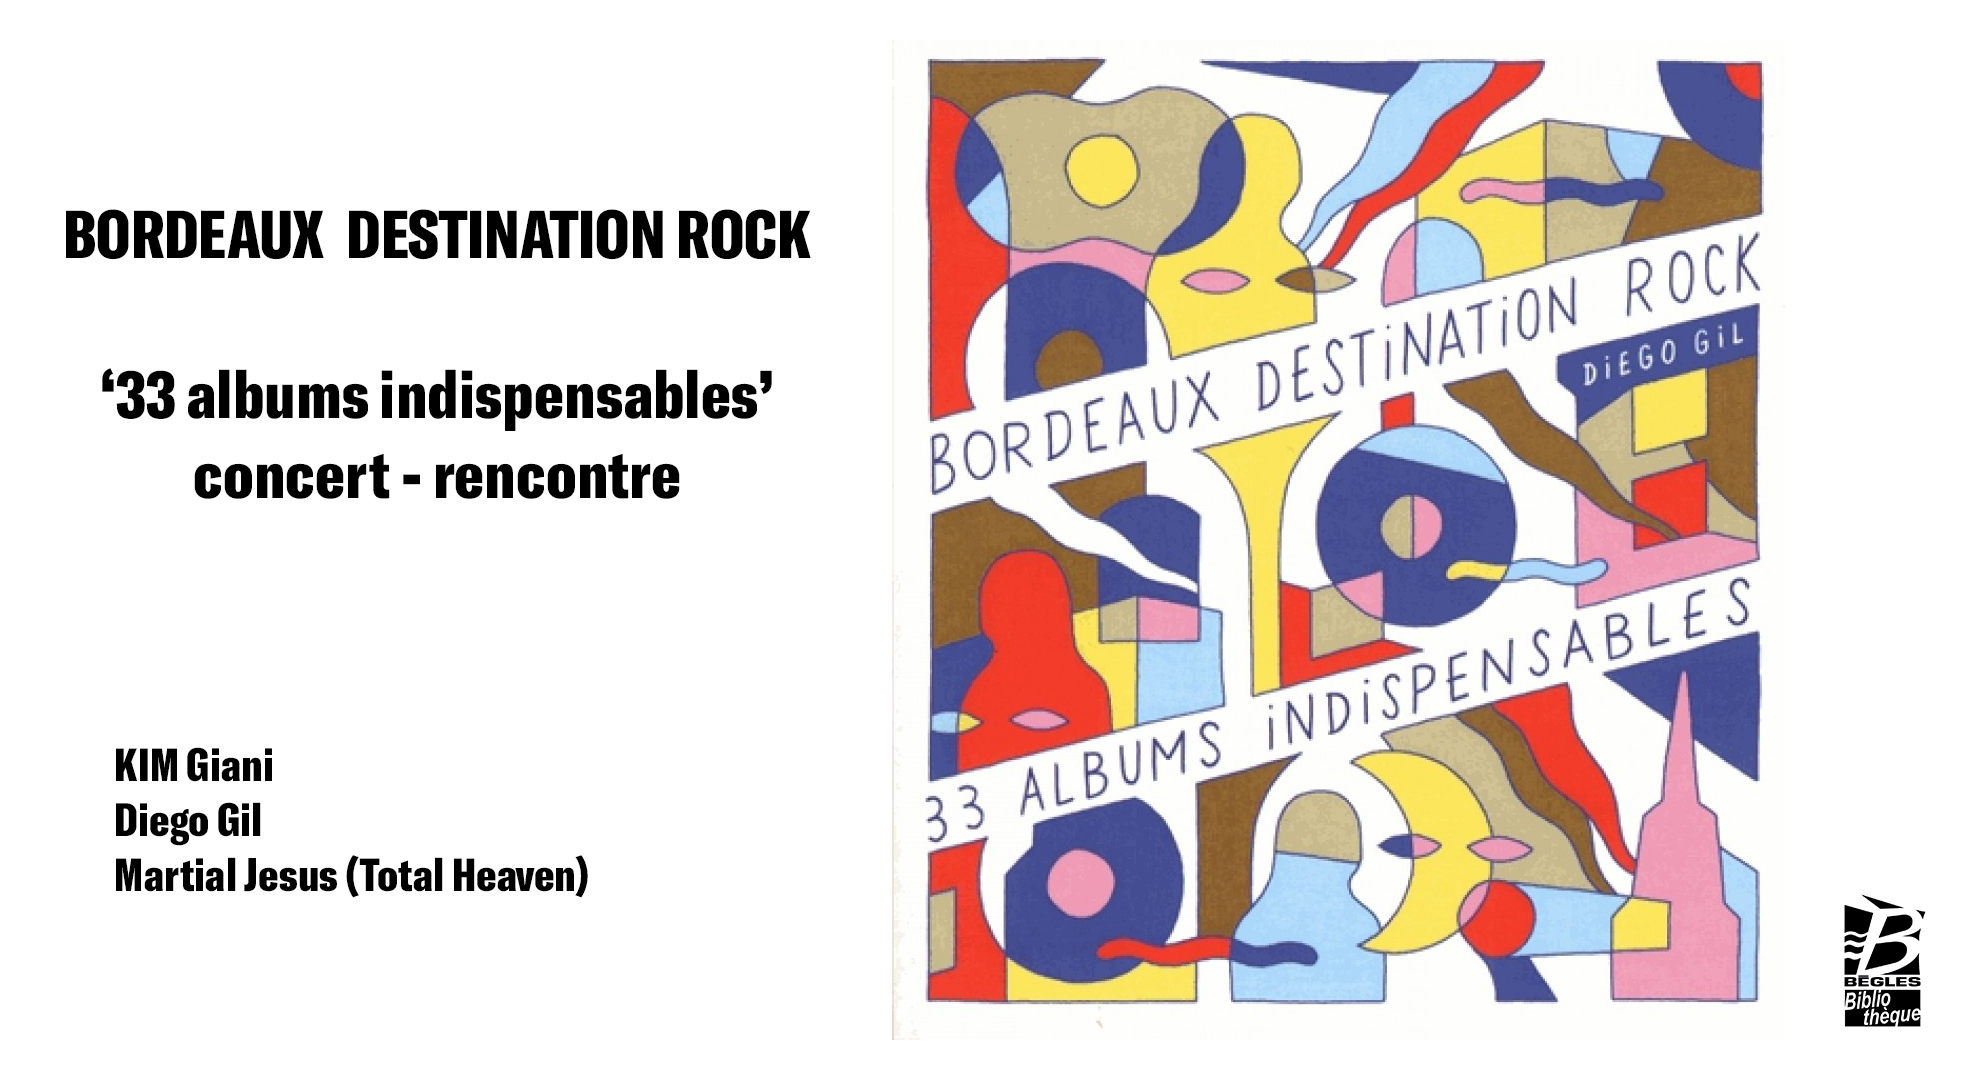 Bordeaux destination Rock